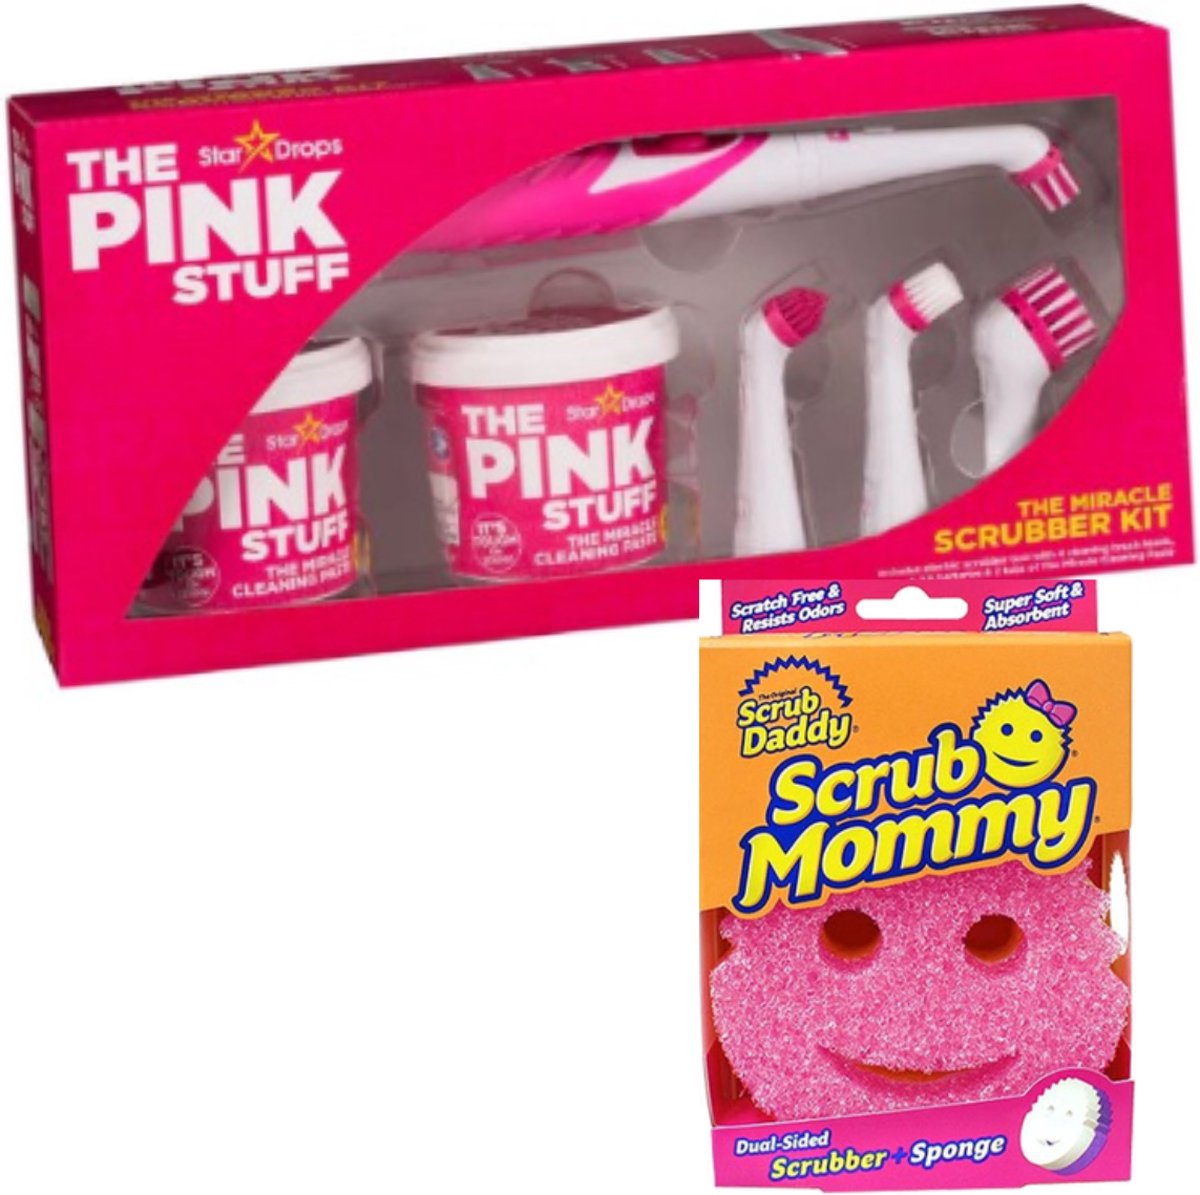 The Pink Stuff The Miracle Cleaning Paste Kit - Le kit de démarrage ultime  pour The Pink Stuff - Kit de nettoyage